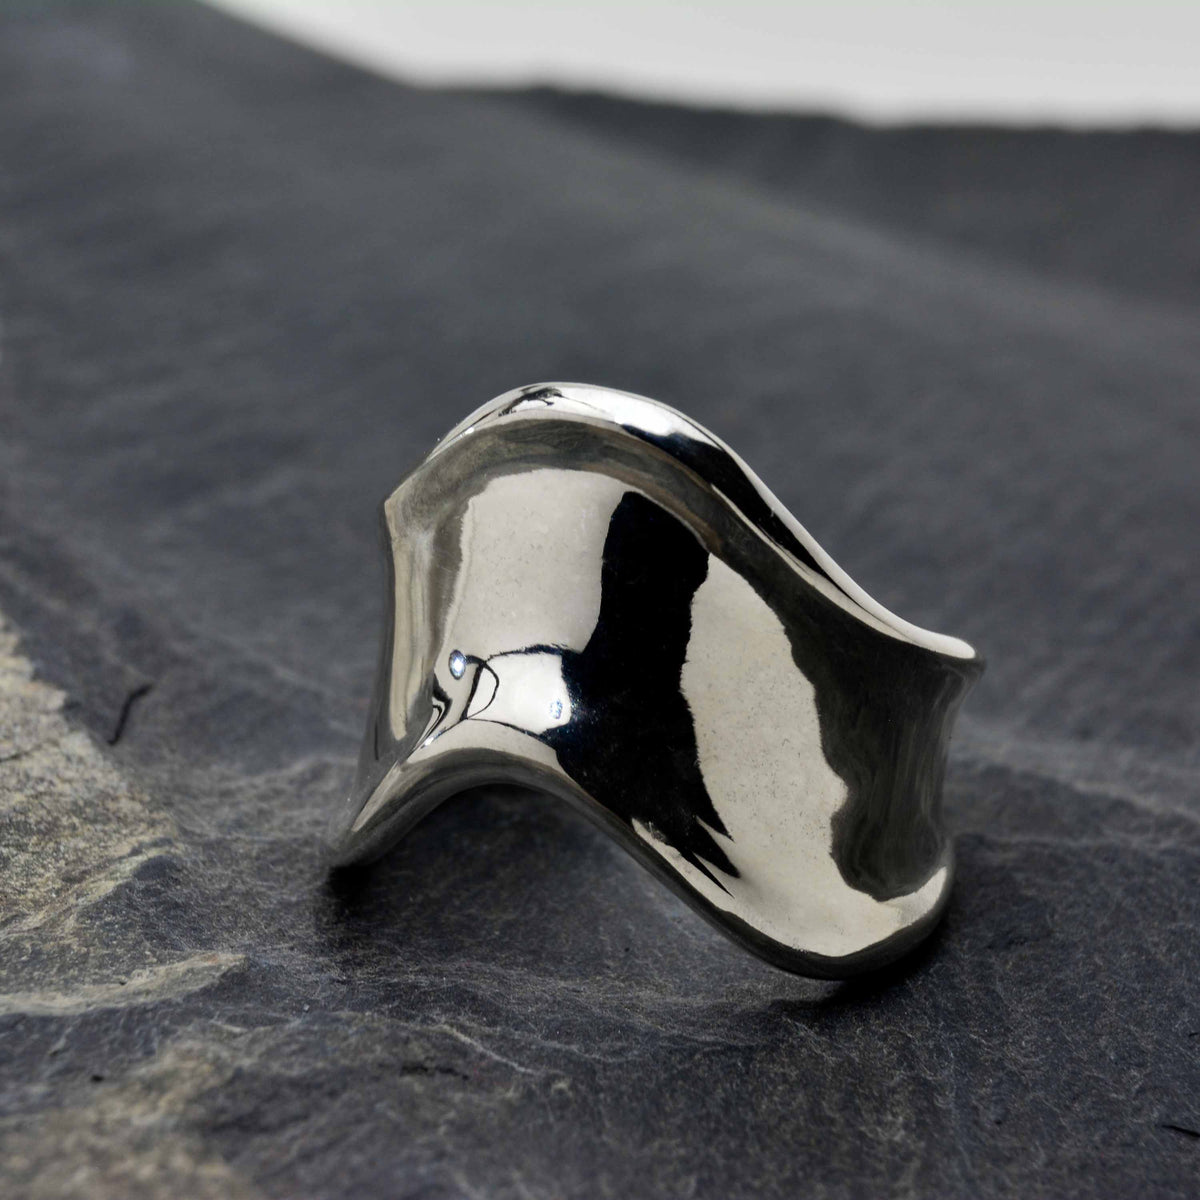 Der Evolution Silver Ring hat ein V-förmiges Design, das kantig, dick und mutig ist